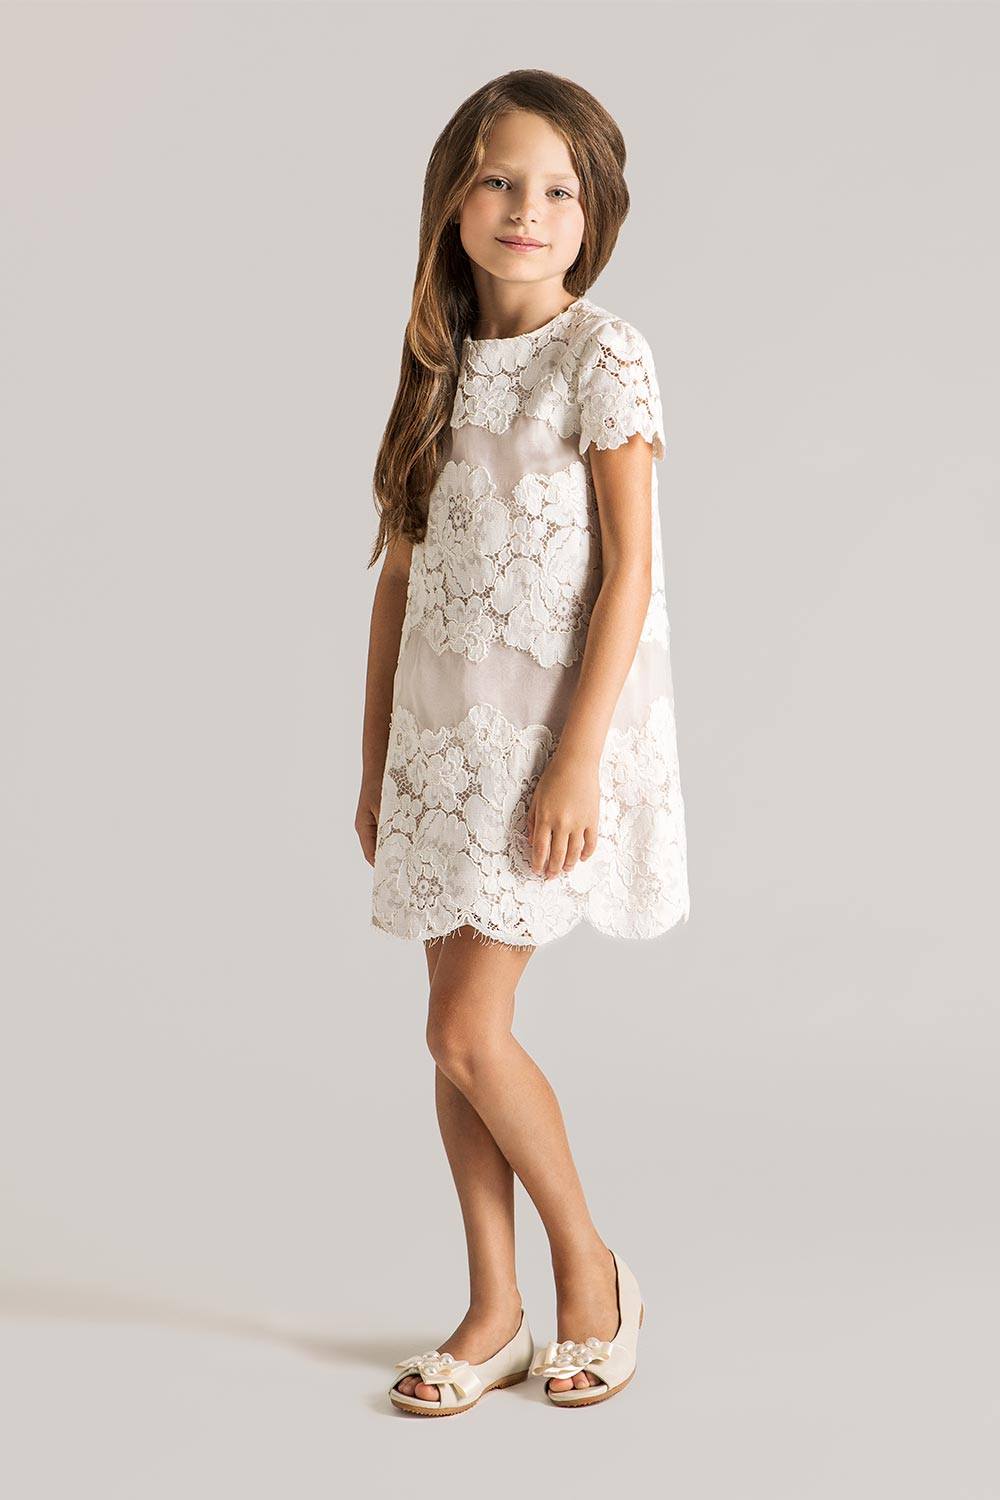 Красивые белые платья для девочек: лучшие идеи для нежных образов